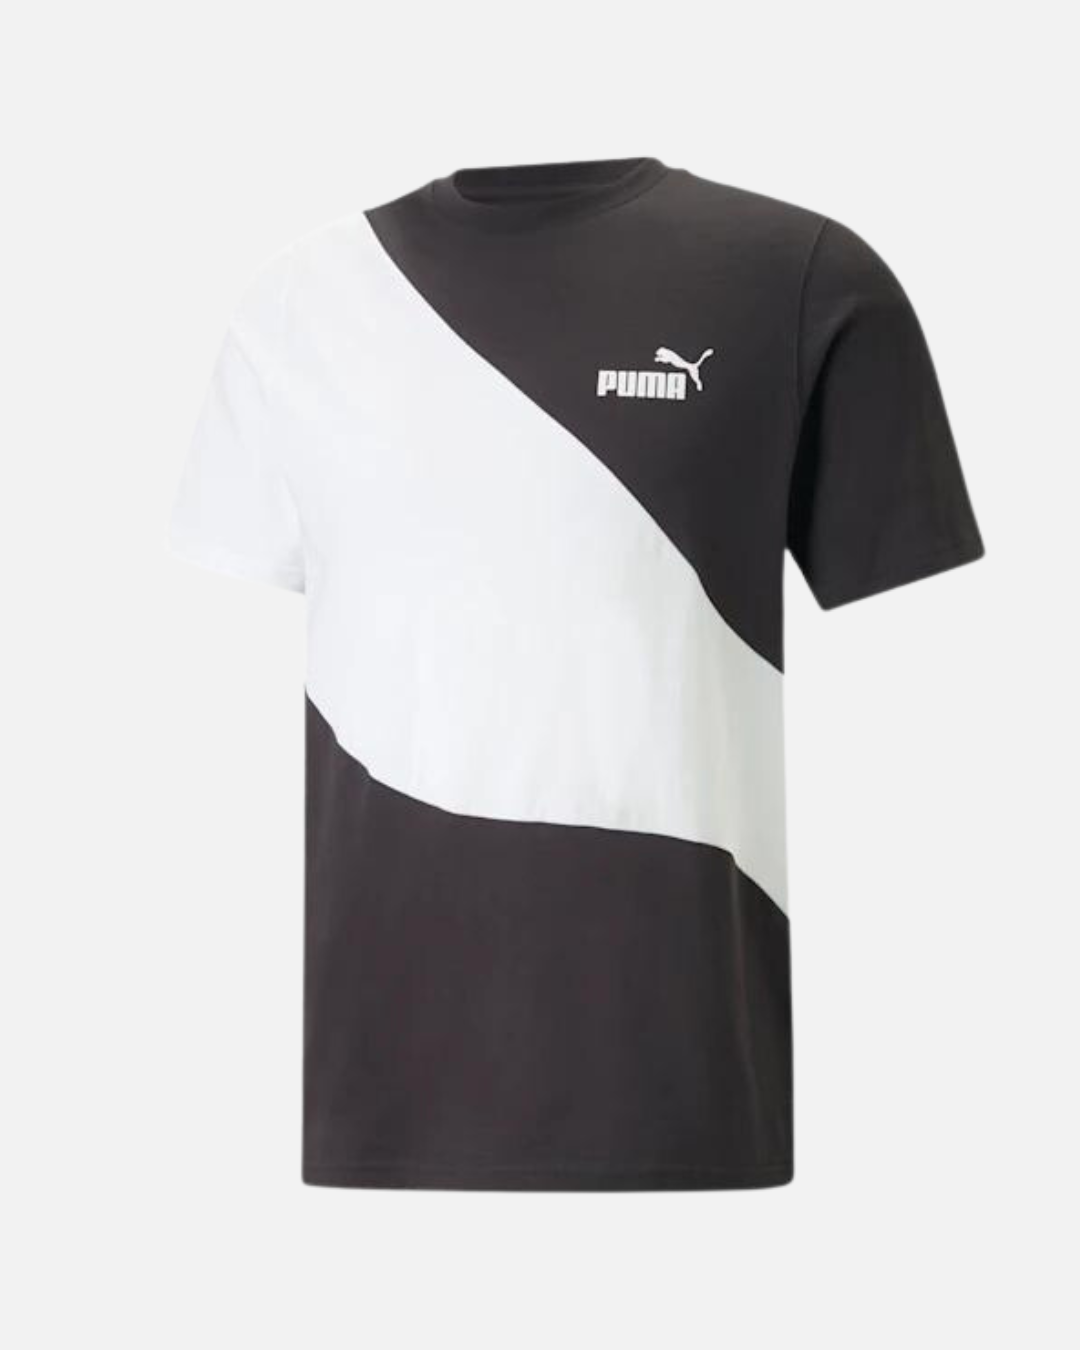 T-Shirt Puma Power - Schwarz/Weiß